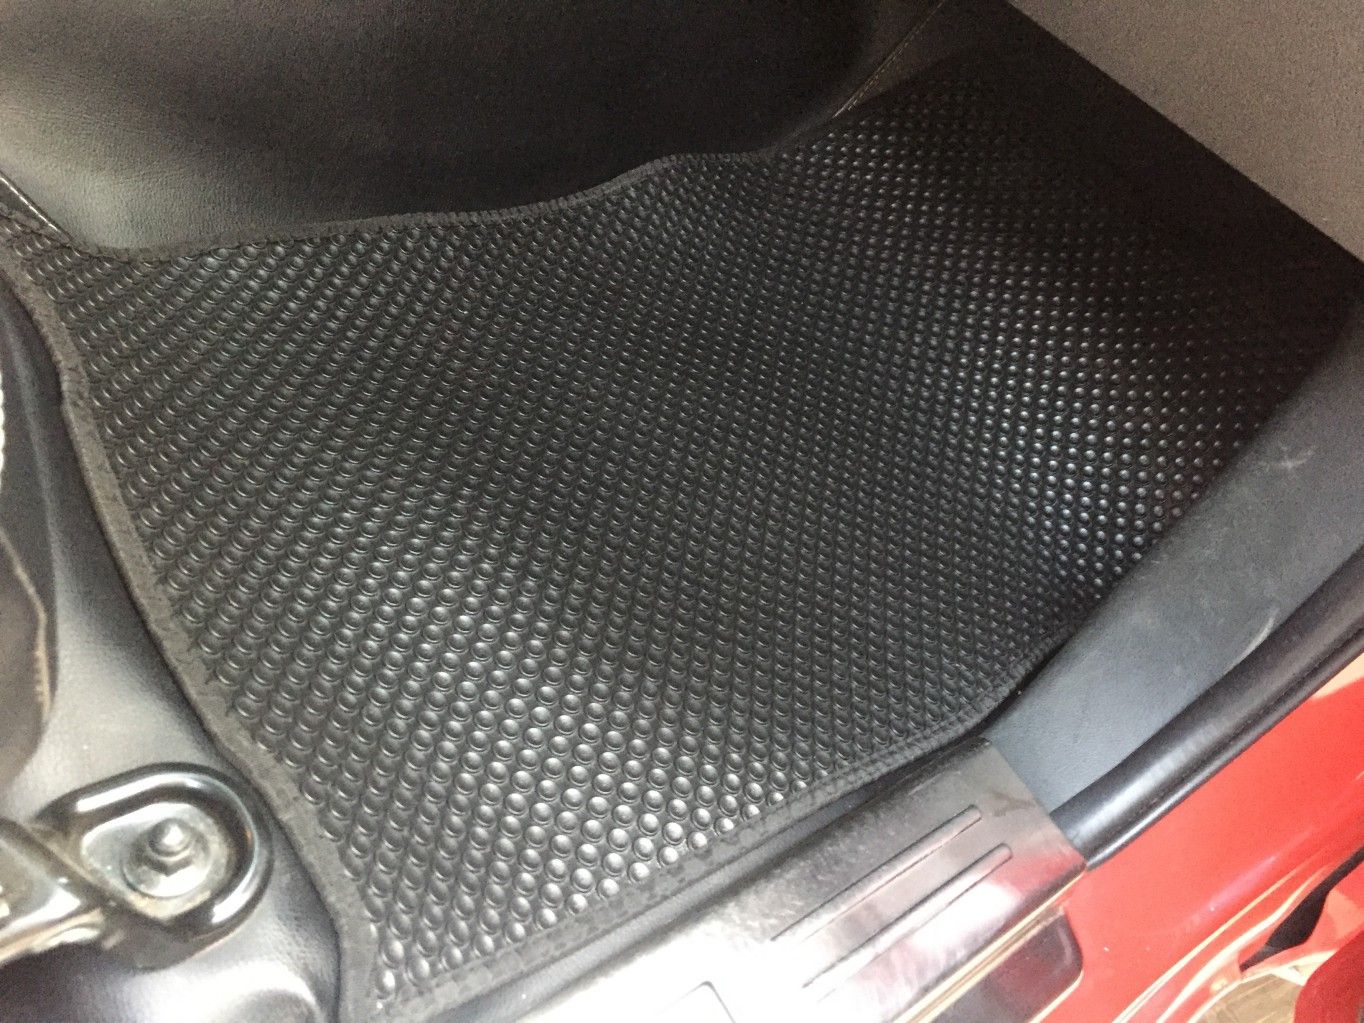 Thảm lót sàn KATA cho xe Mitsubishi Triton (2020-Đến Nay) - Hàng chính hãng không mùi, không ẩm mốc, dễ vệ sinh